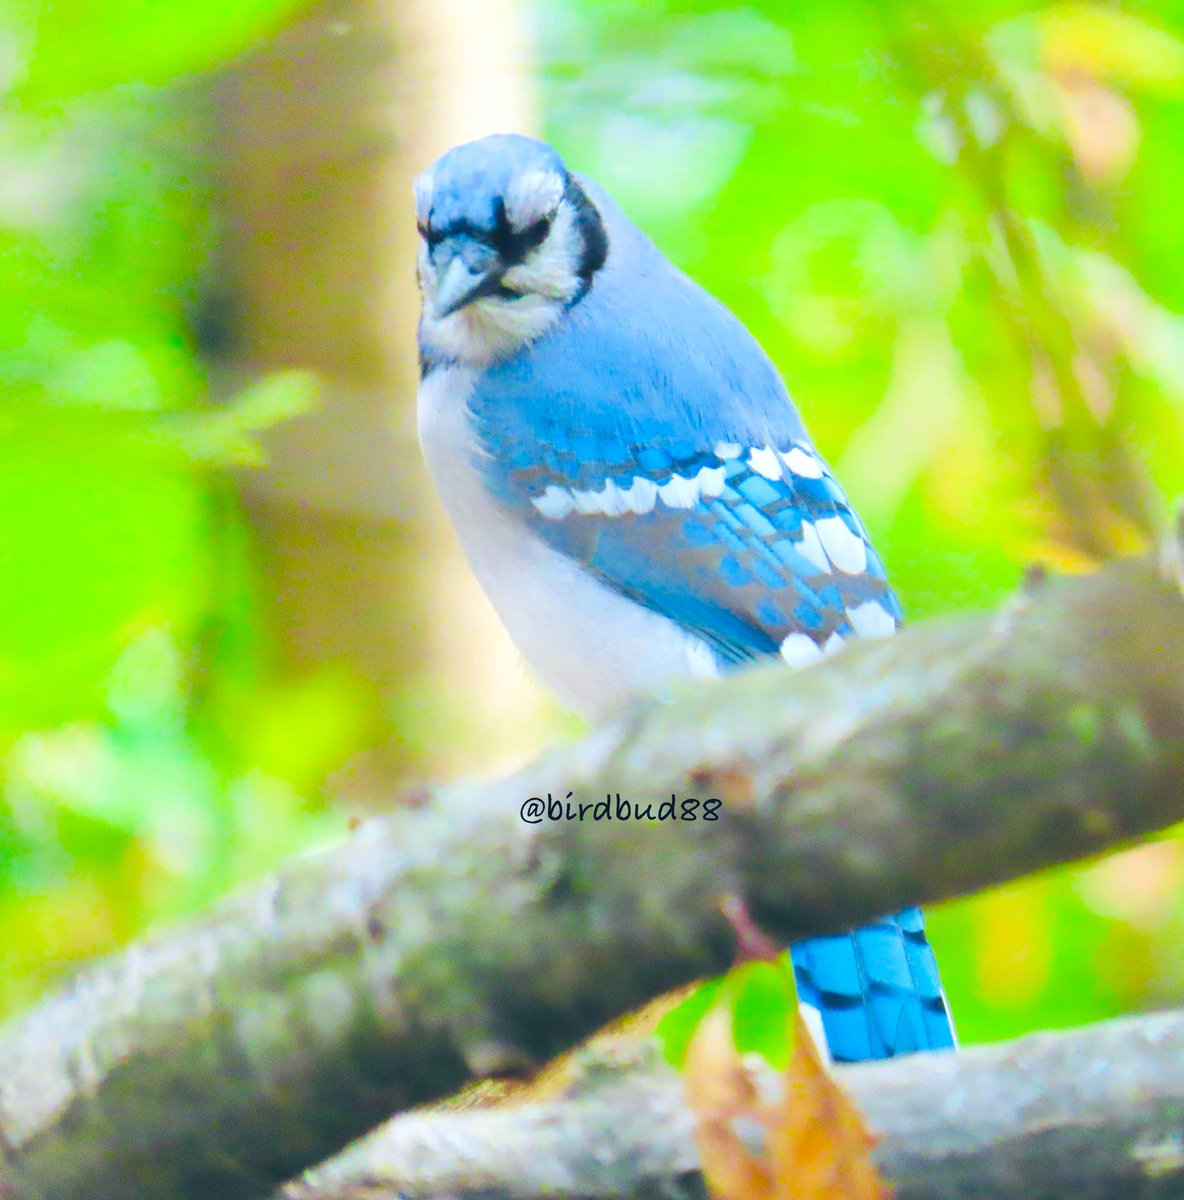 Common noisy Brilliantly blue Blue jays😃 #NaturePhotography #TwitterNatureCommunity #TwitterNaturePhotography #nature #birdwatching #BirdTwitter #birdphotography #jays